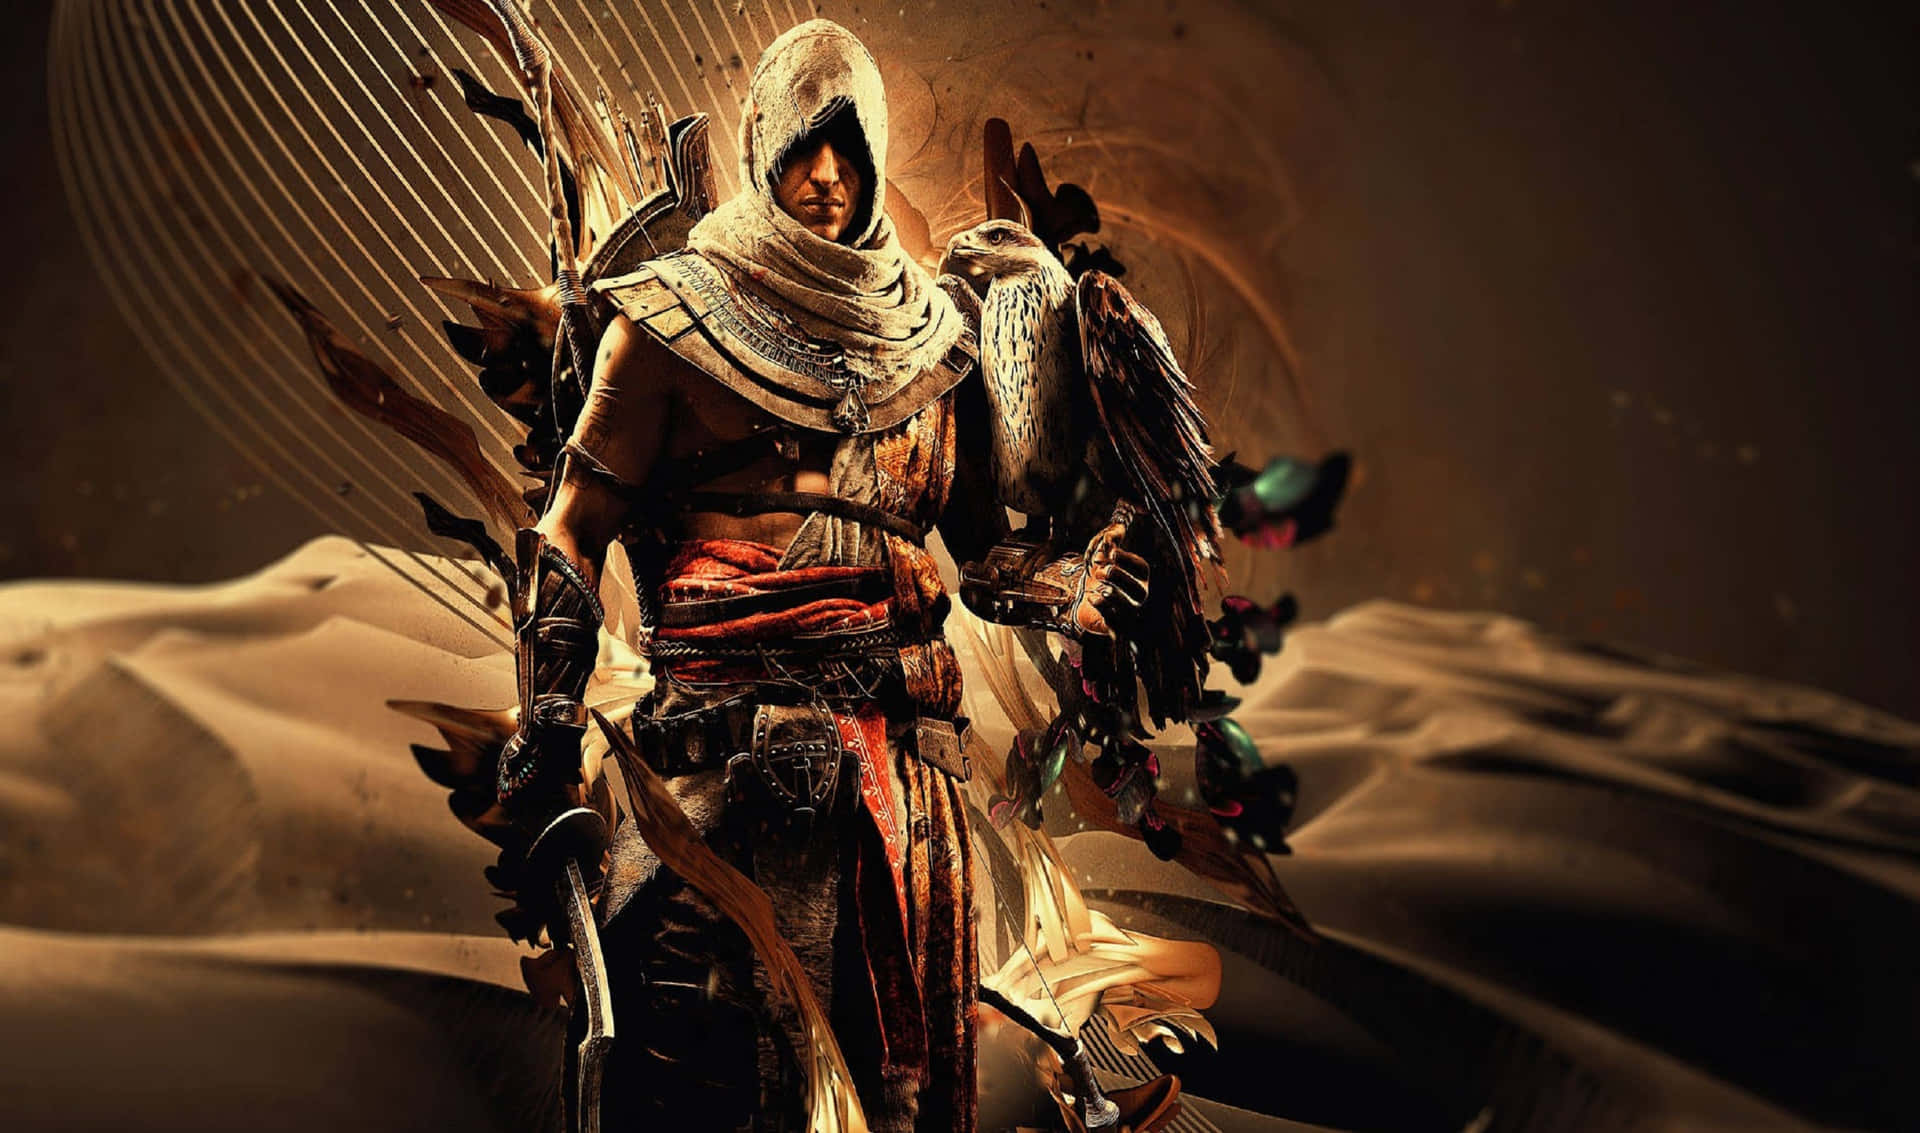 Grafikkunstvon Assassin's Creed Odyssey Hintergrund Mit Einer Auflösung Von 2440x1440.